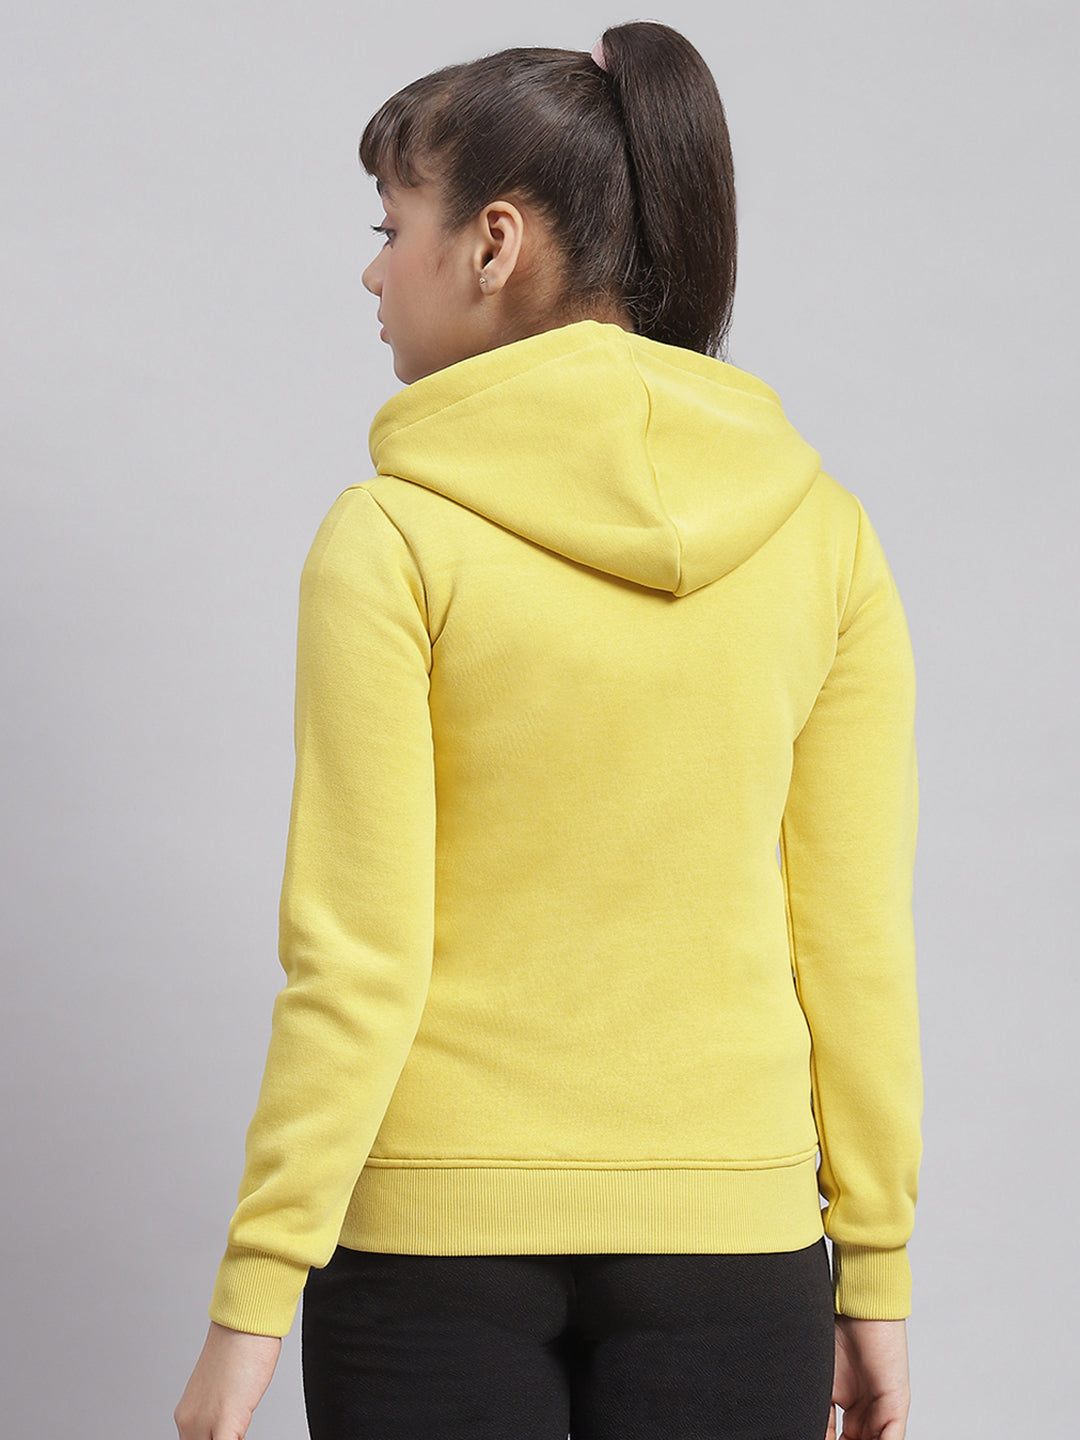 Girls Yellow Solid Hooded Full Sleeve Sweatshirt